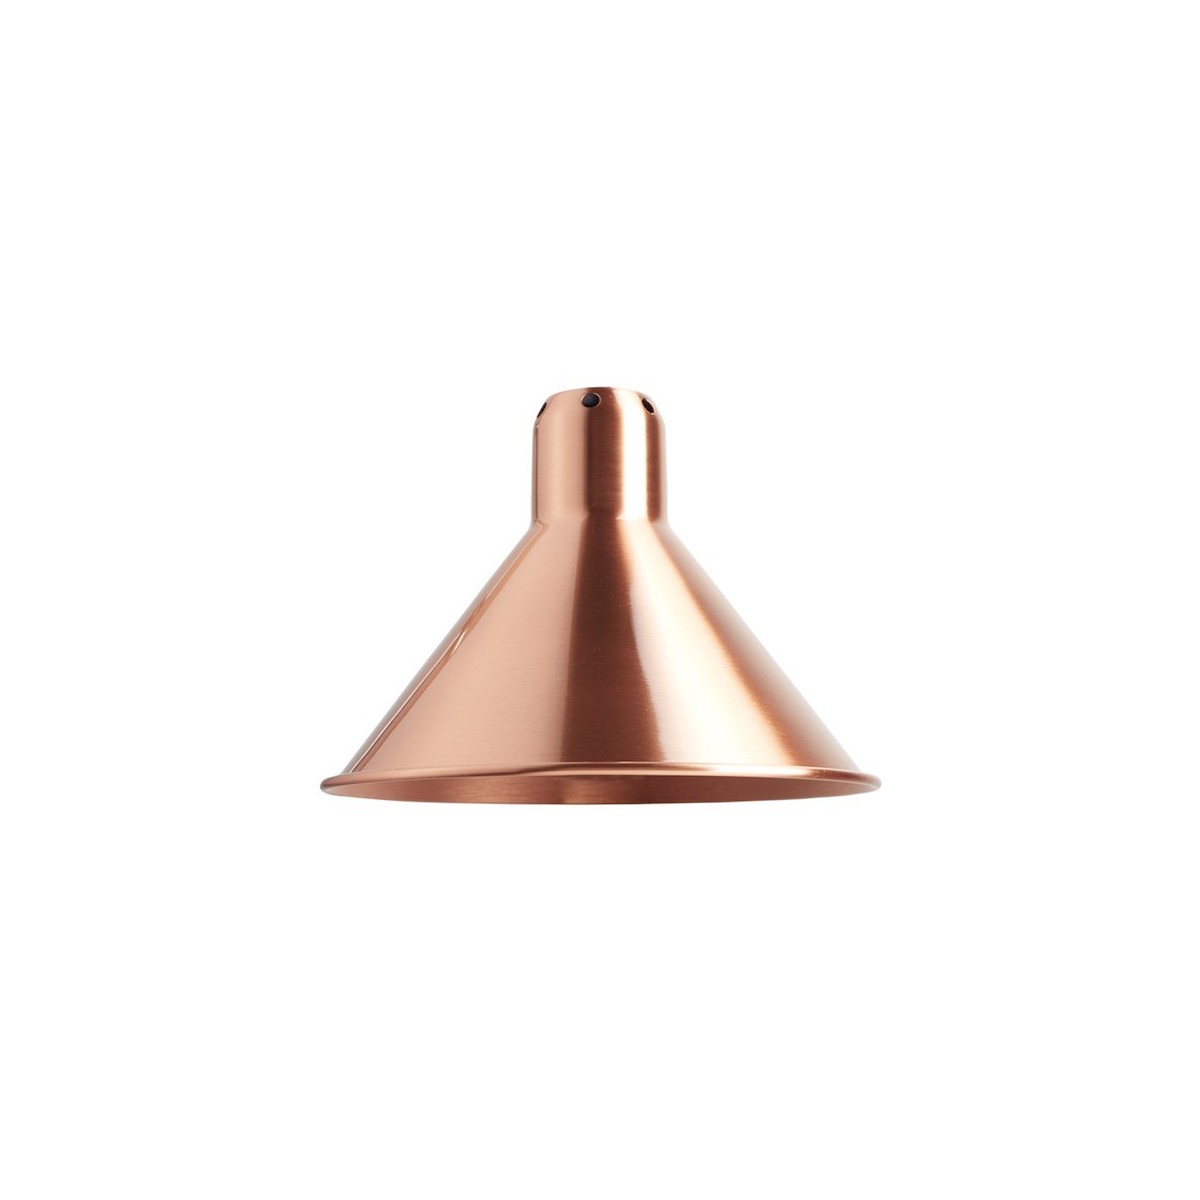 copper / copper inside conic L - shade